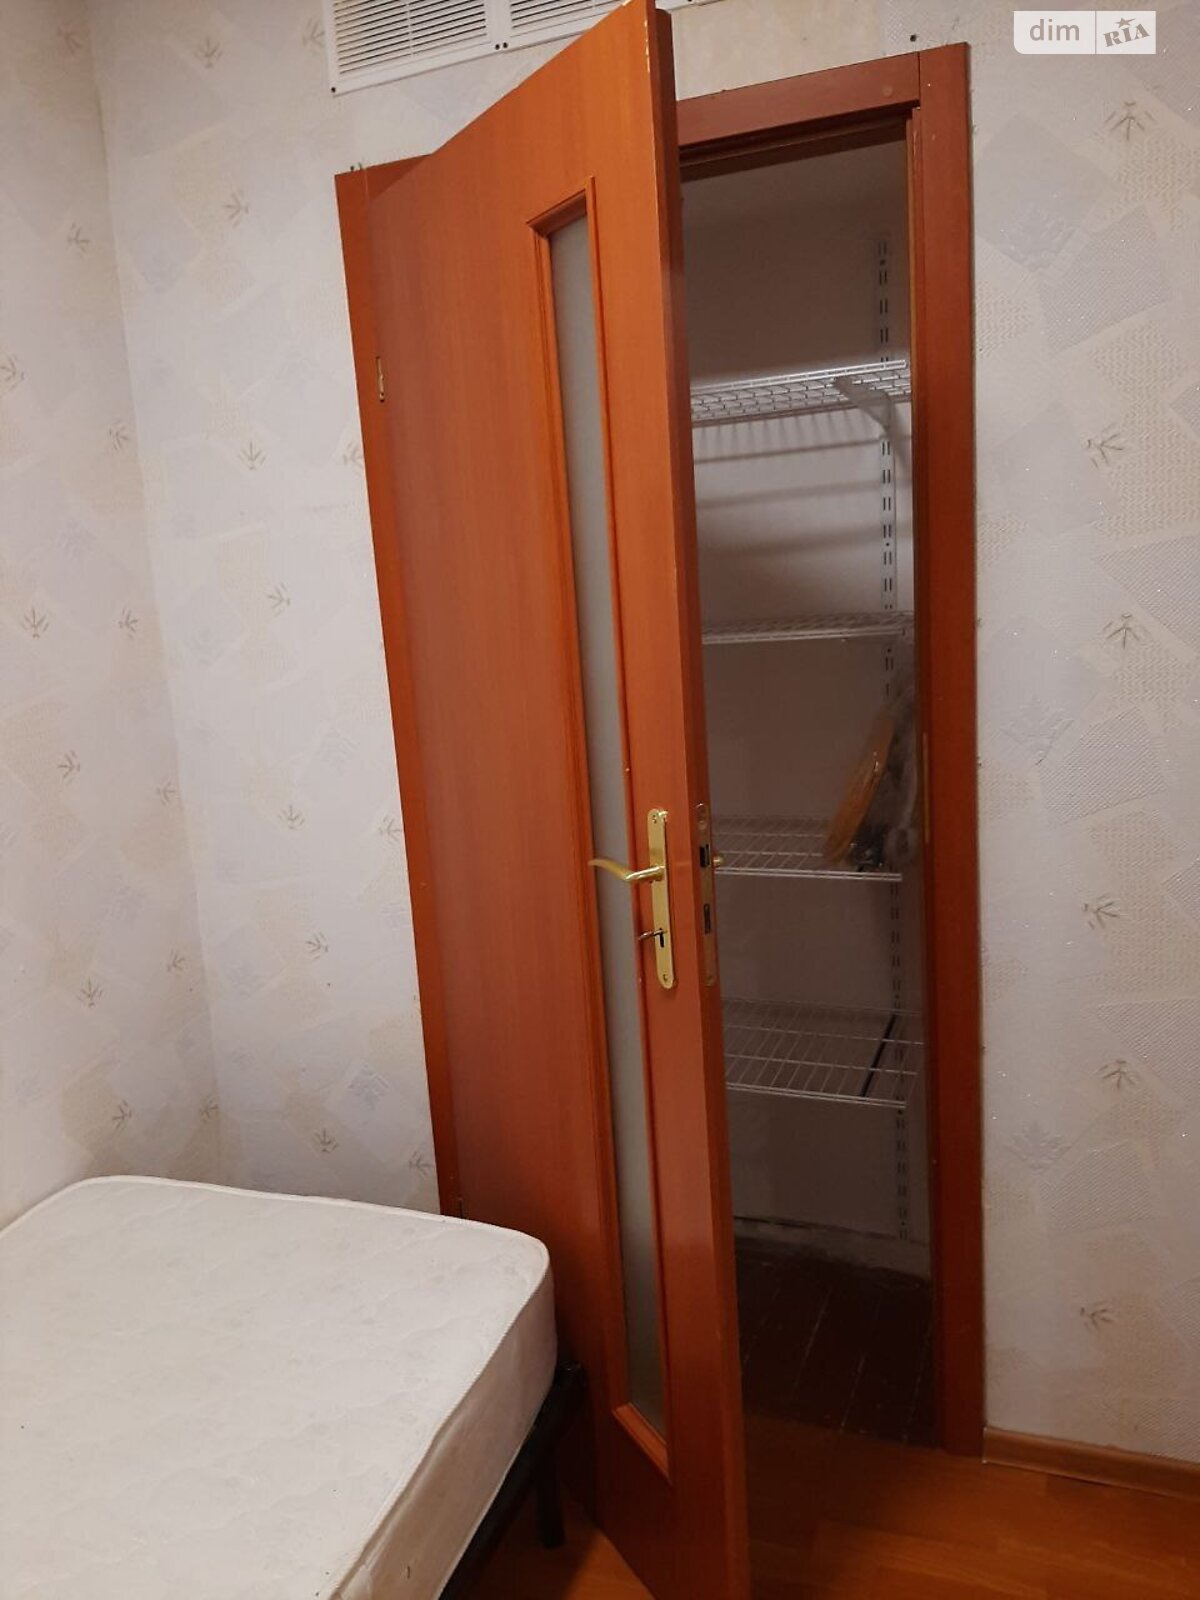 Продажа части дома в Днепре, район Чечеловский, 2 комнаты фото 1